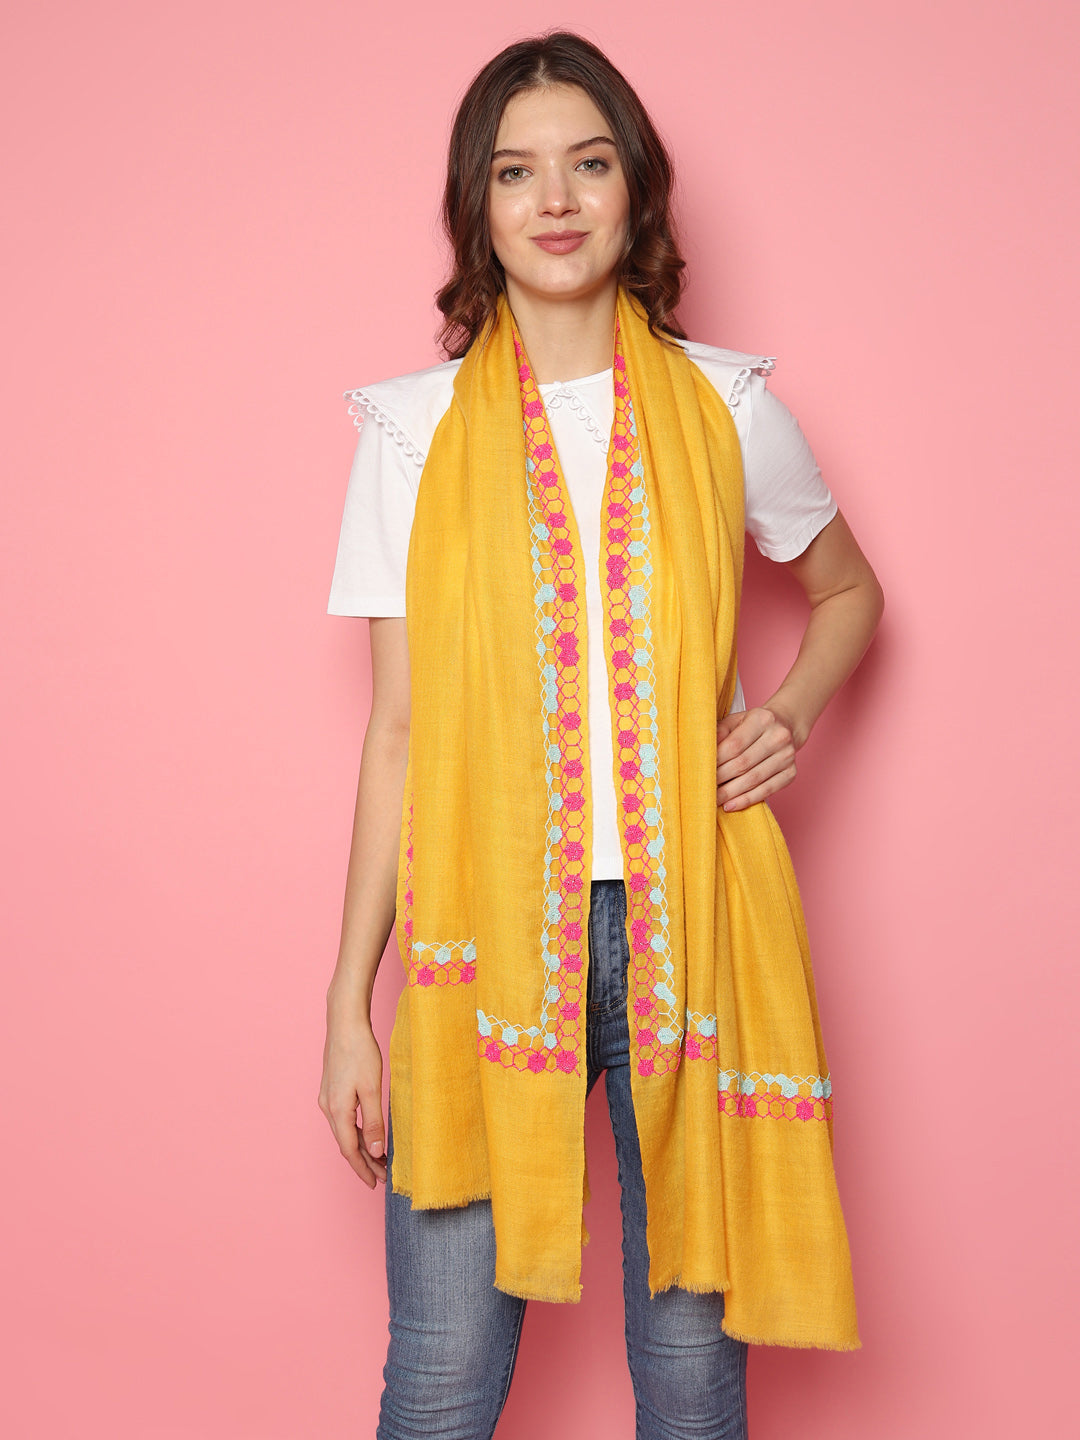 pashmina scarfs, woolen shawls, pure cashmere shawls, indian shawls, kashmir shawls, shawls from Kashmir 